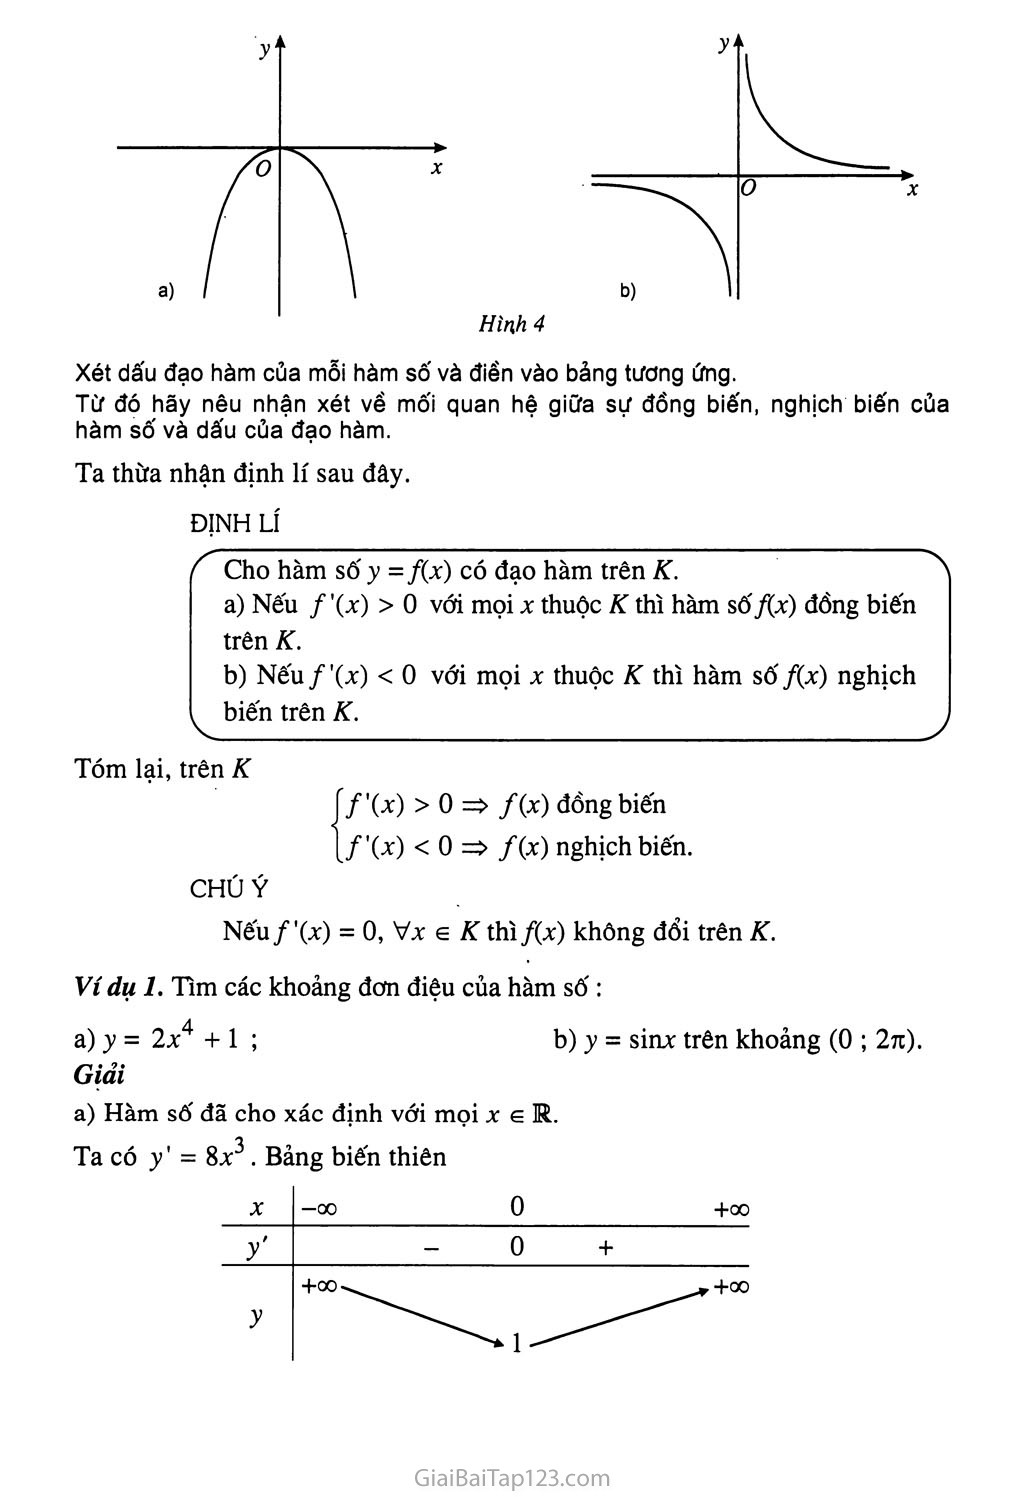 Bài 1. Sự đồng biến, nghịch biến của hàm số - Bài đọc thêm: Tính chất đơn điệu của hàm số - Bạn có biết: La - garăng (J. L. Lagrange) trang 4